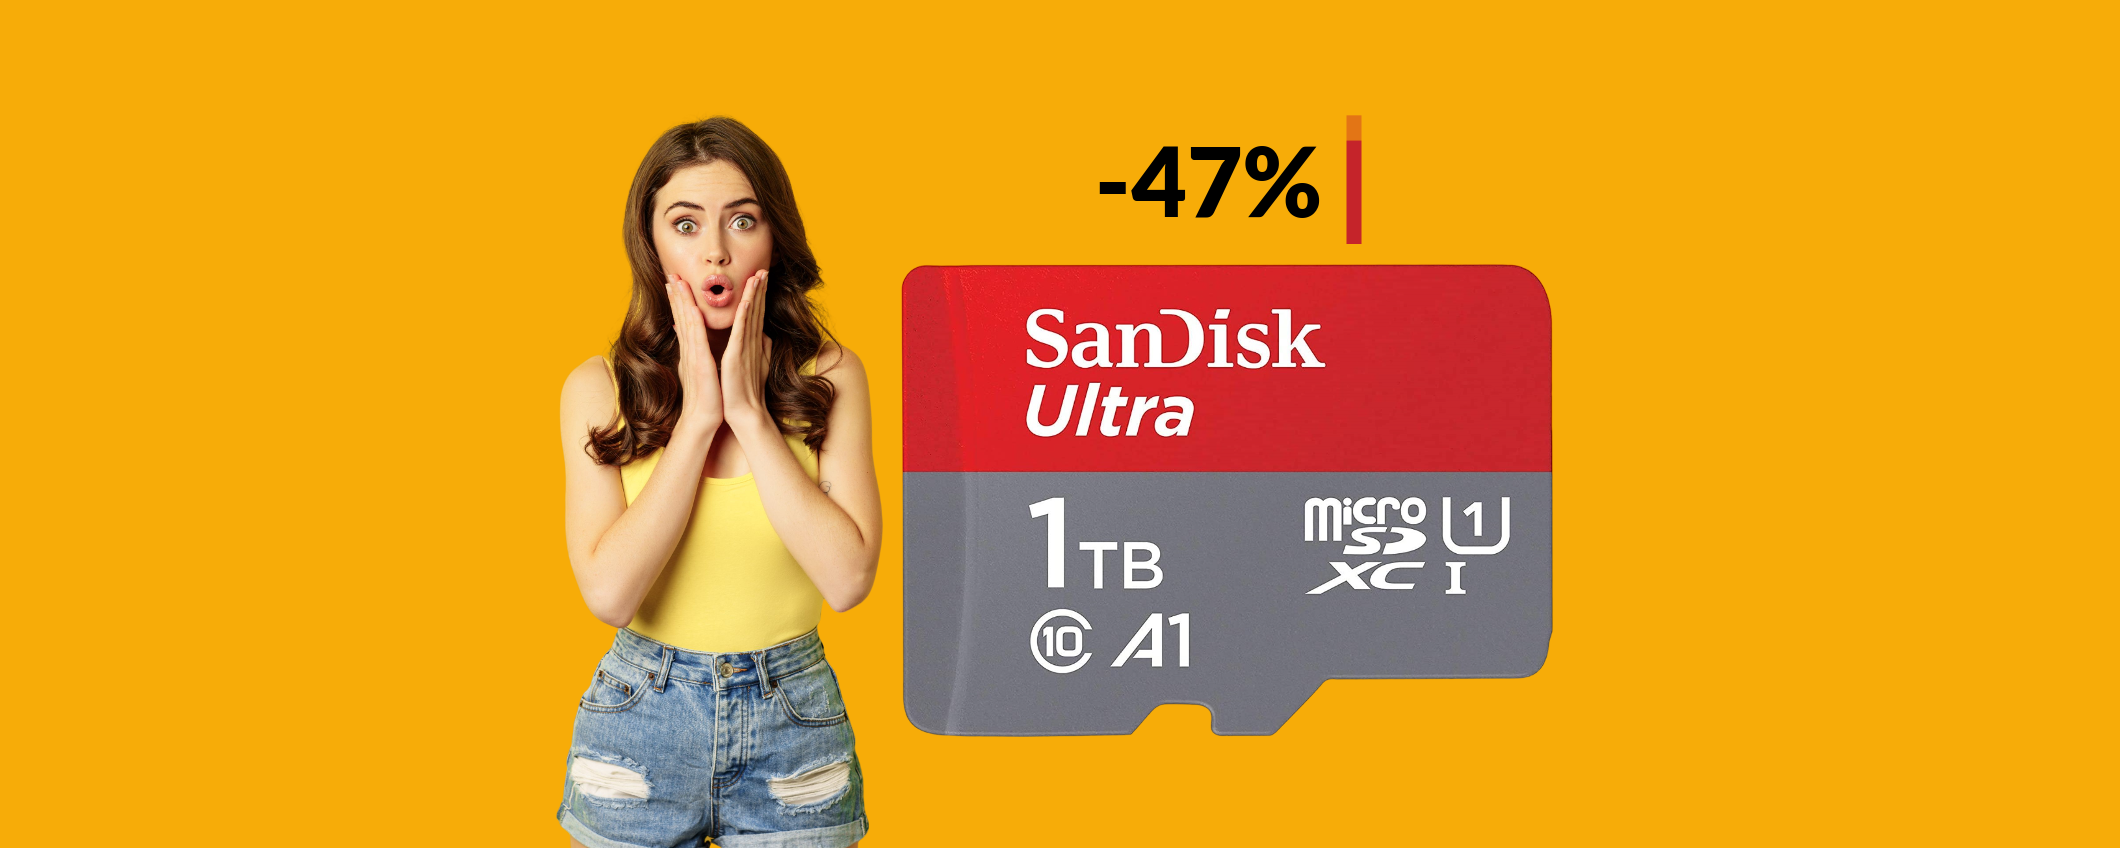 MicroSD SanDisk 1TB a quasi METÀ PREZZO: memoria INFINITA